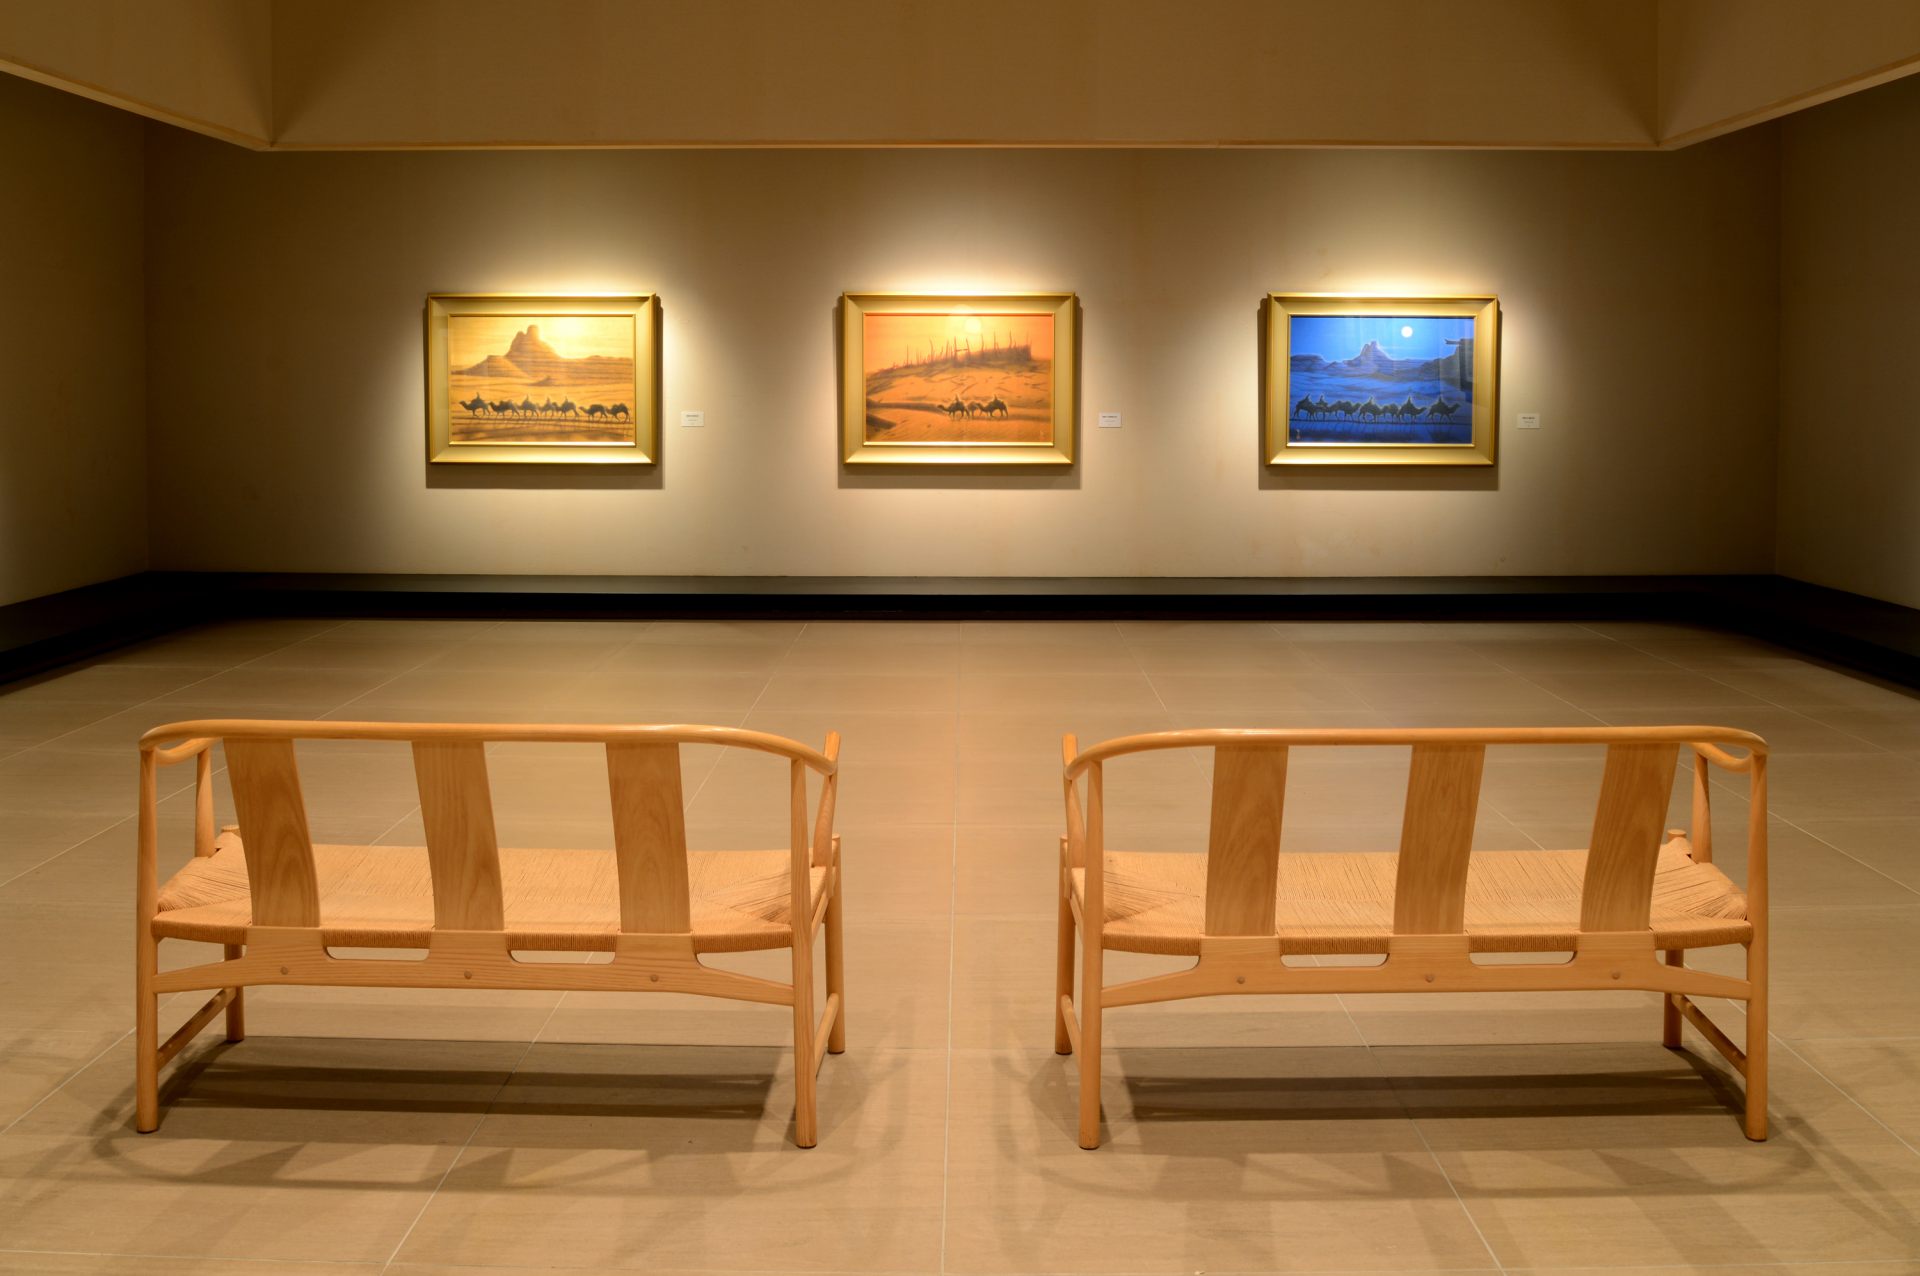 平山郁夫氏の代表作「楼蘭遺跡(ろうらんいせき)三題」の展示も。ゆったり広々とした空間の中で、作品が存在感を放ちます。